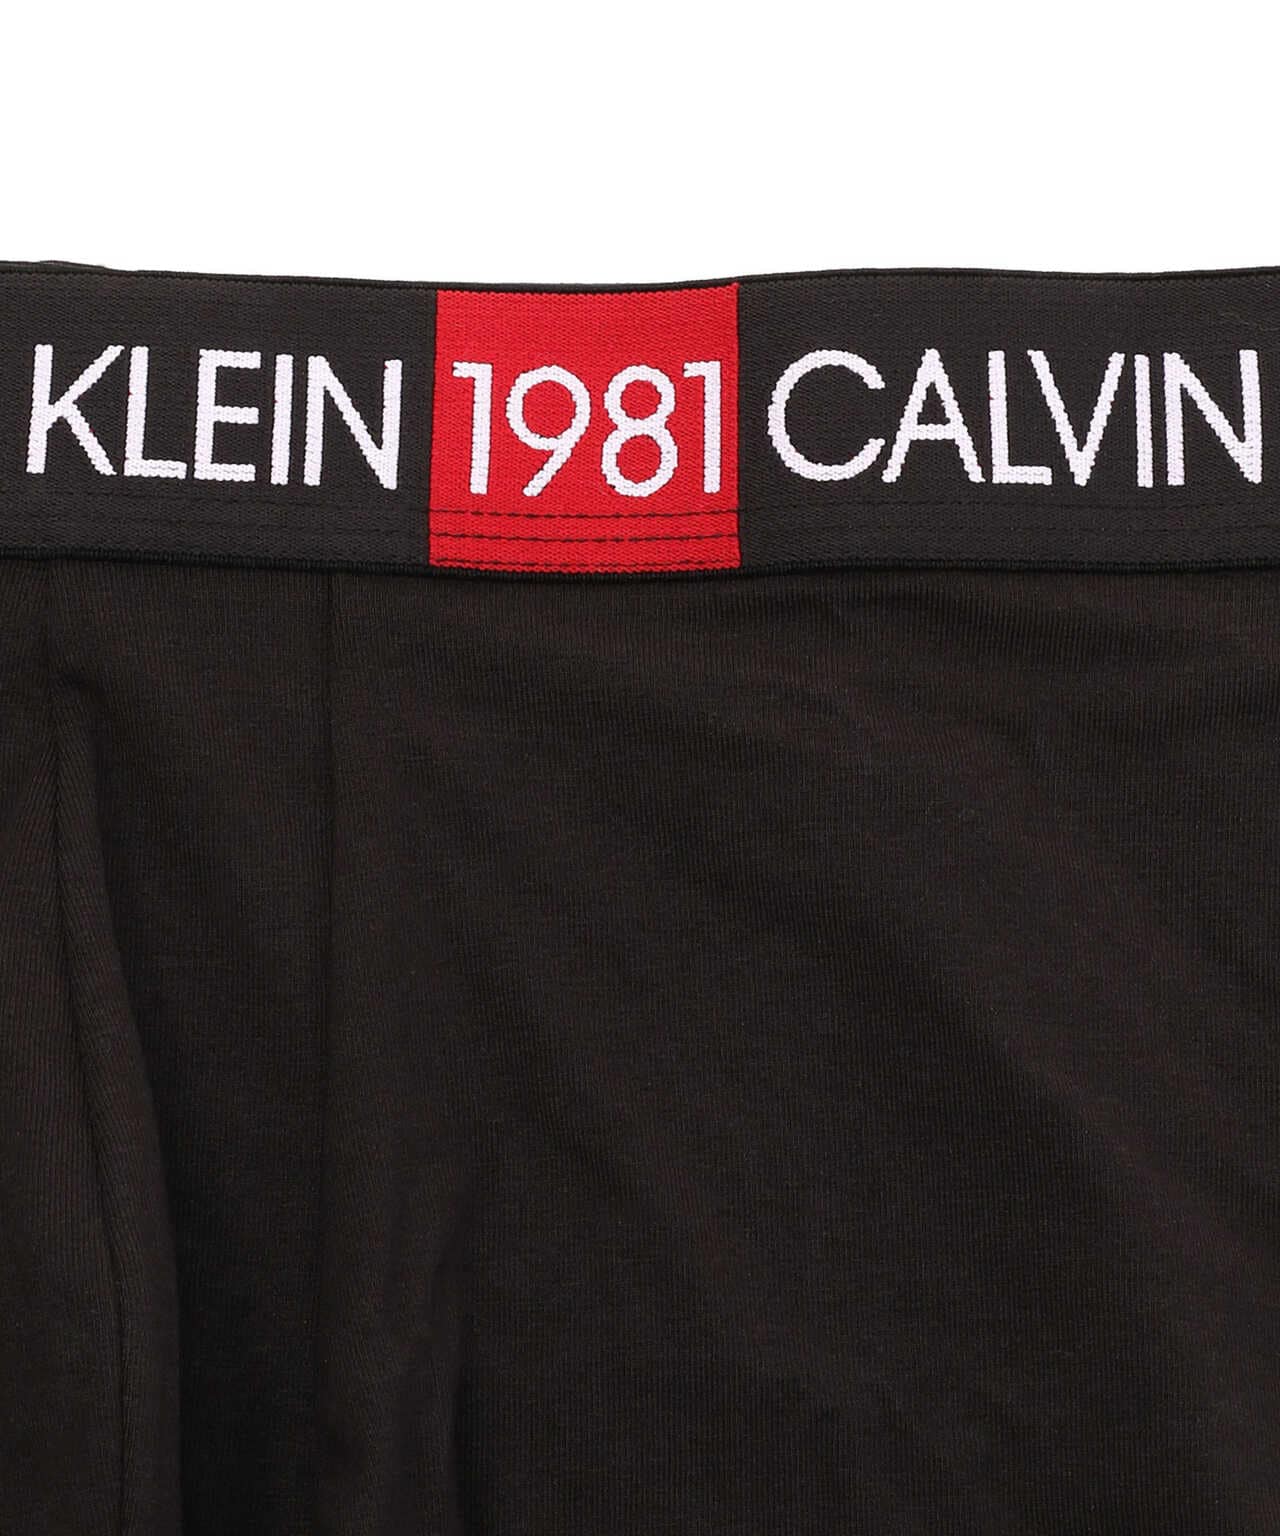 CALVIN KLEIN/カルヴァンクライン/1981 BOLD COTTON | LHP 